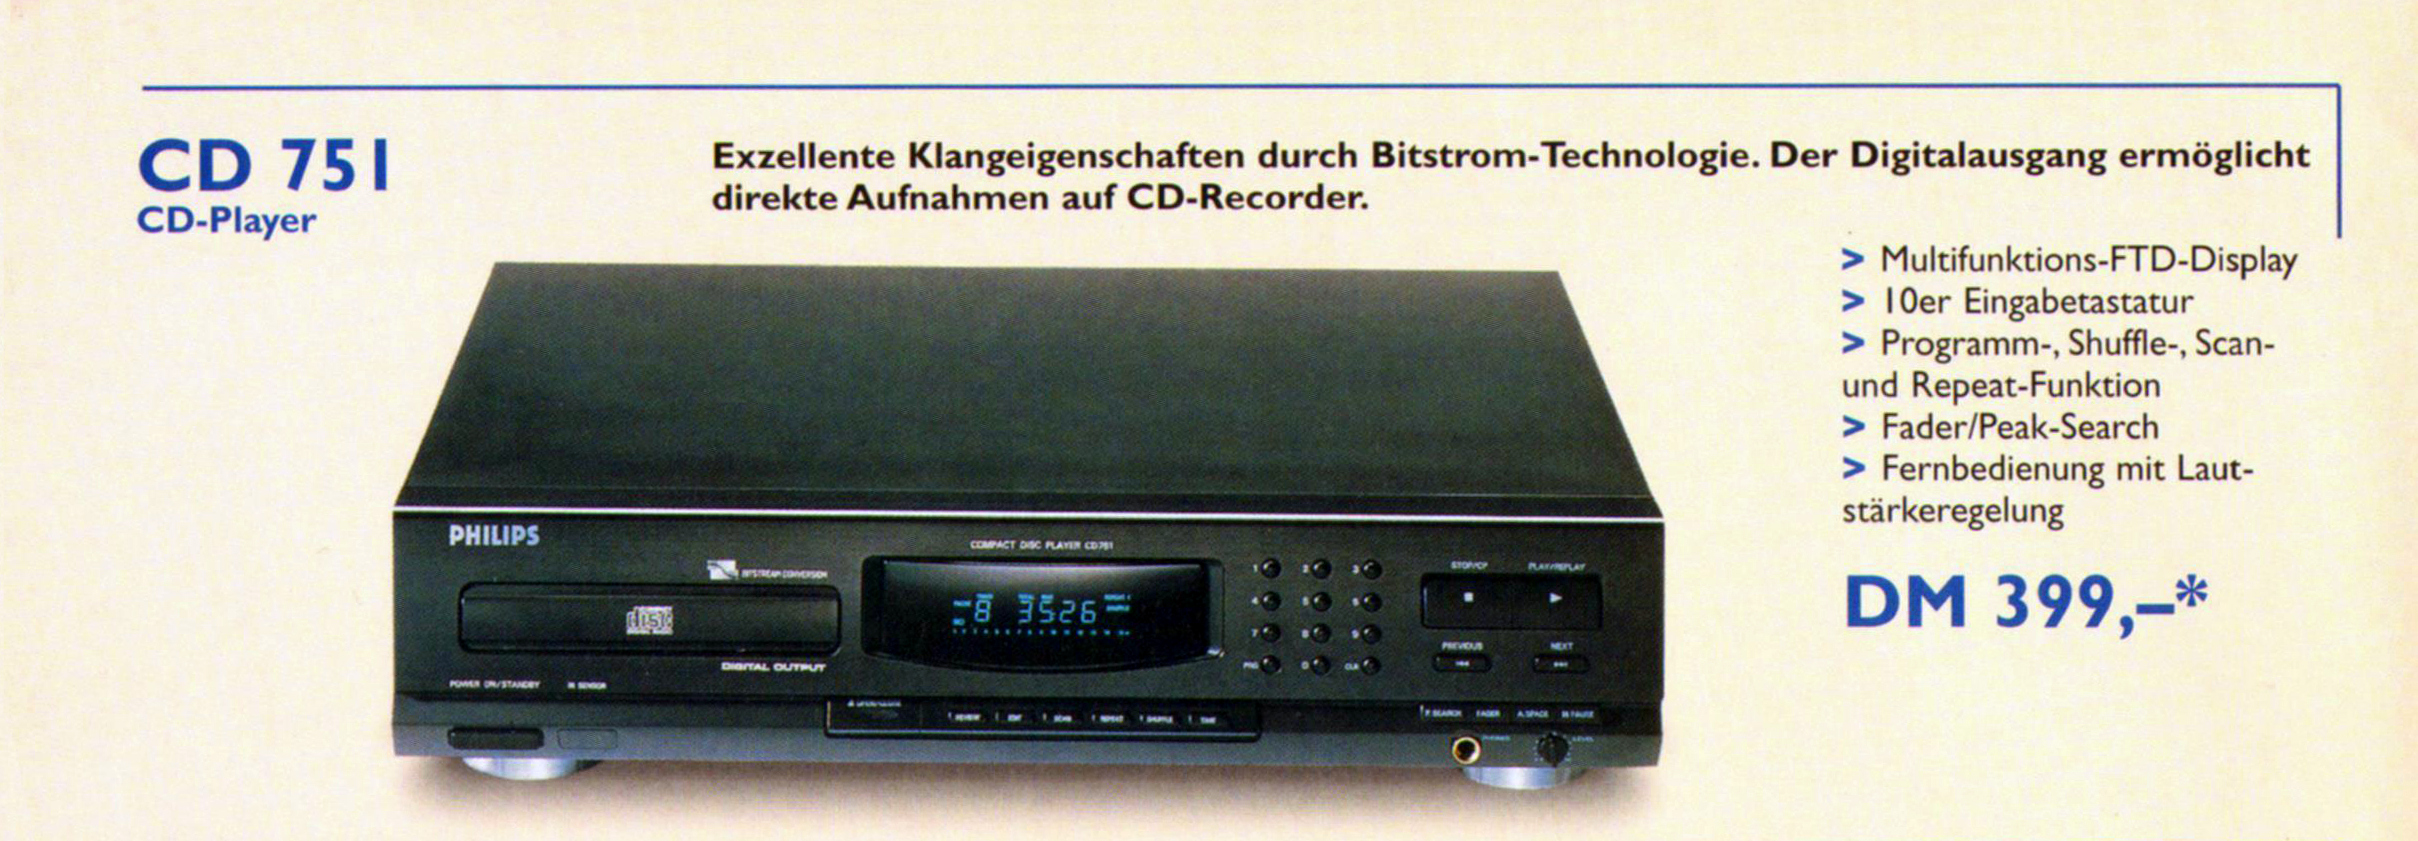 Philips CD-751-1998.jpg